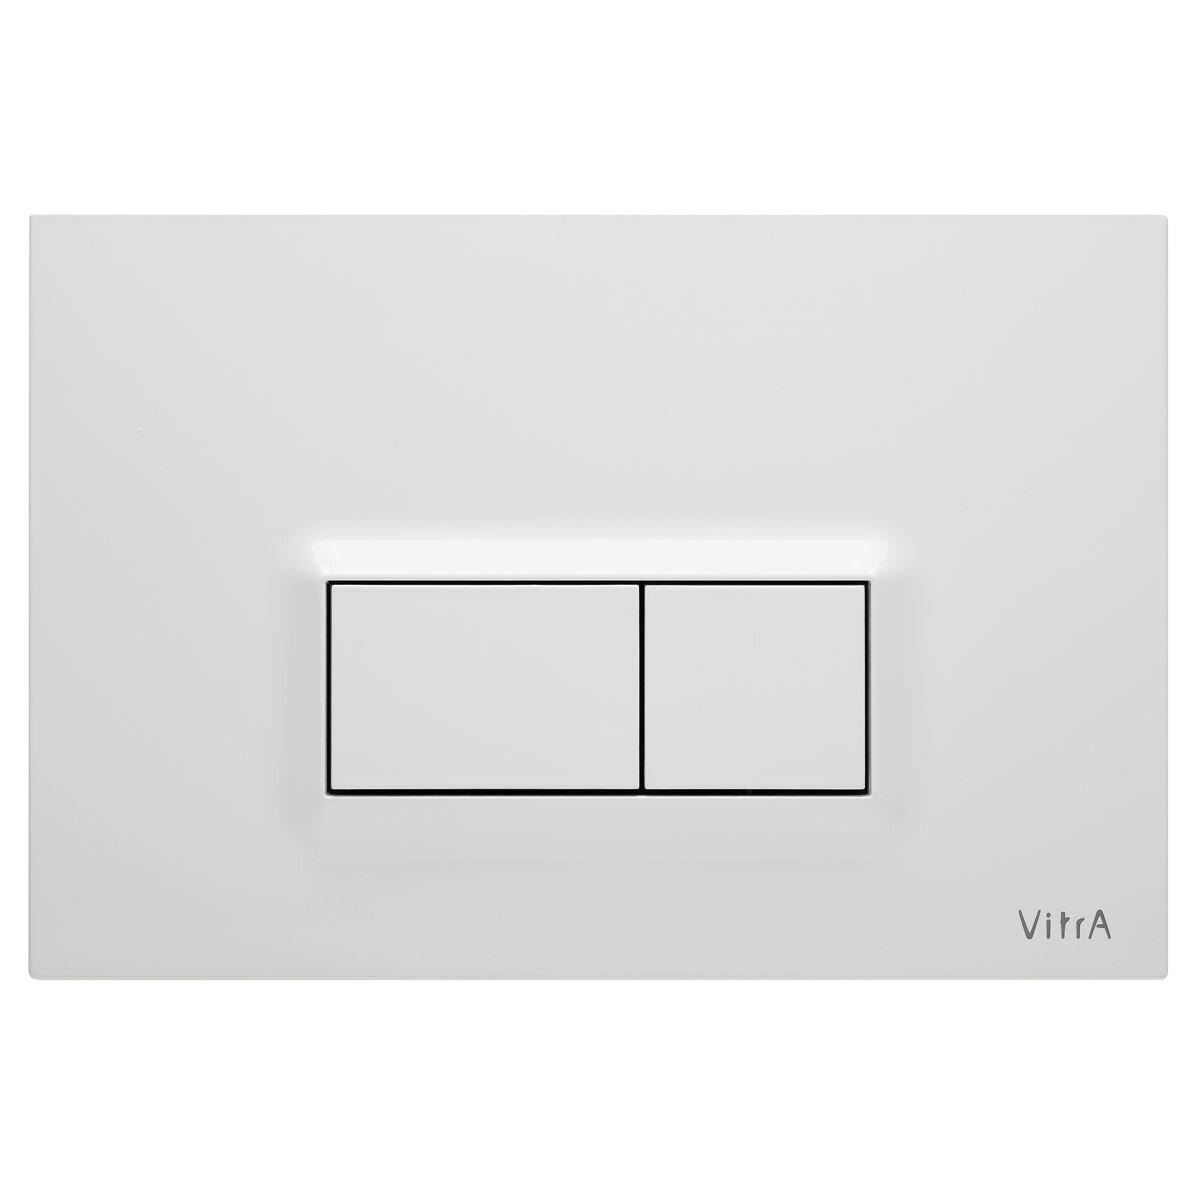 740-0600 Vitra Loop R Kumanda Paneli - Parlak Beyaz